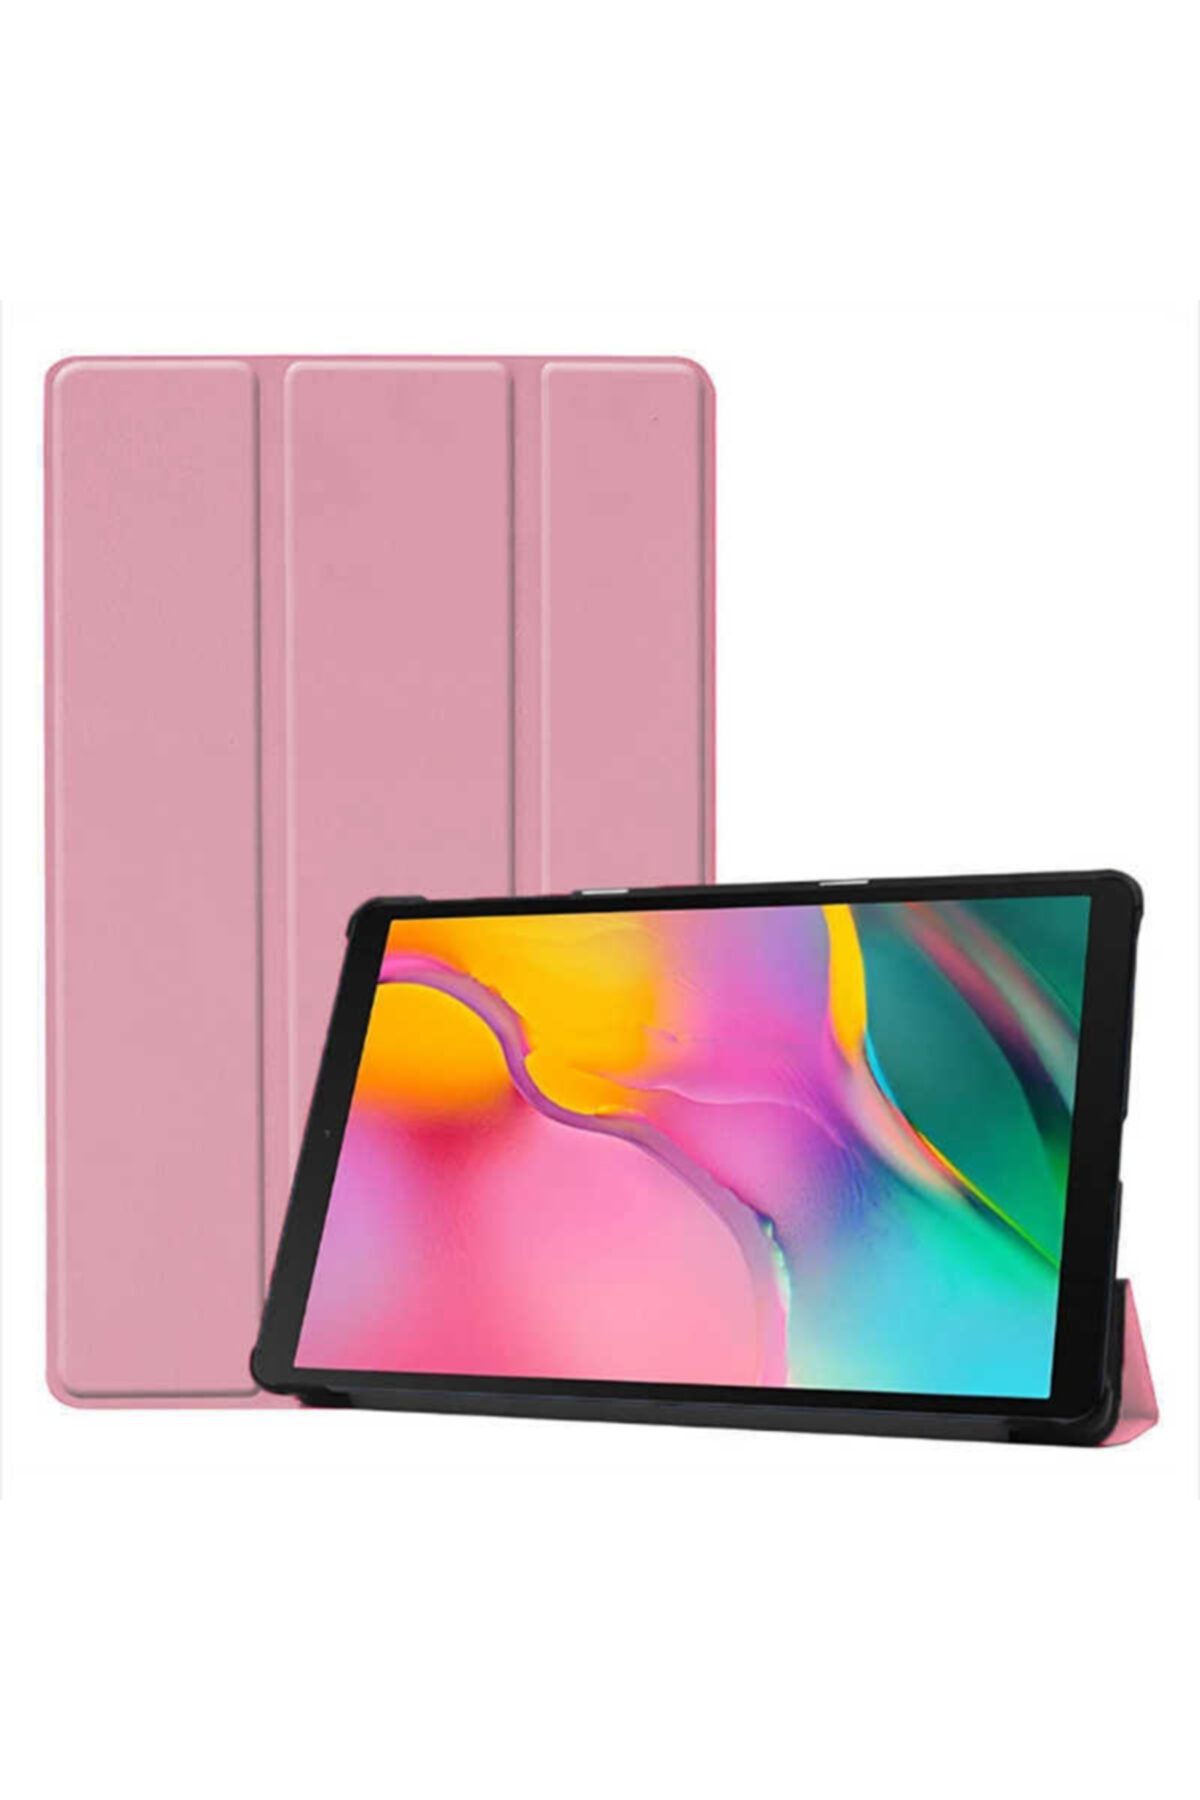 Mobildizayn Apple Ipad 10.2 Smart Cover Standlı Arkası Şeffaf Tablet Kılıfı